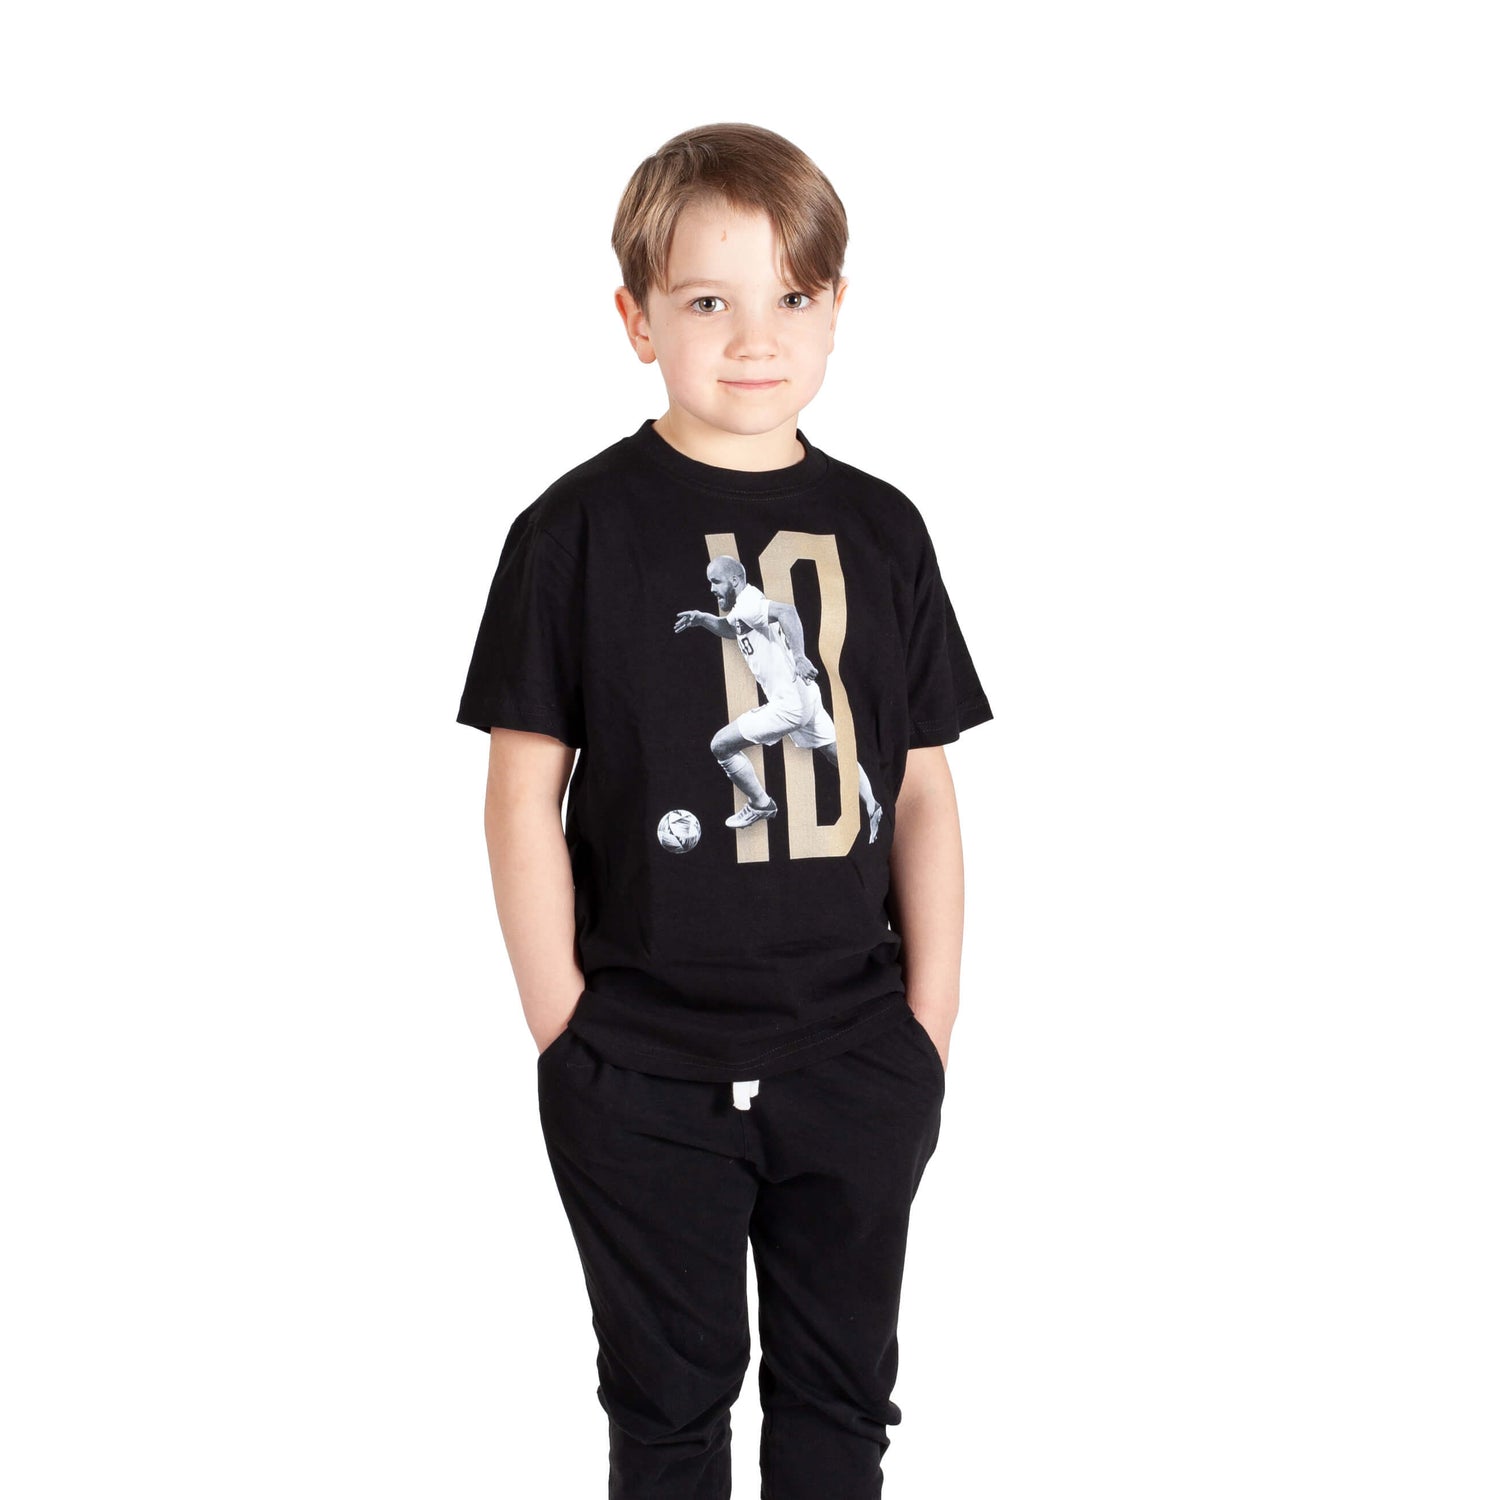 Teemu Pukki #10 Fan T-shirt, Black, Kids